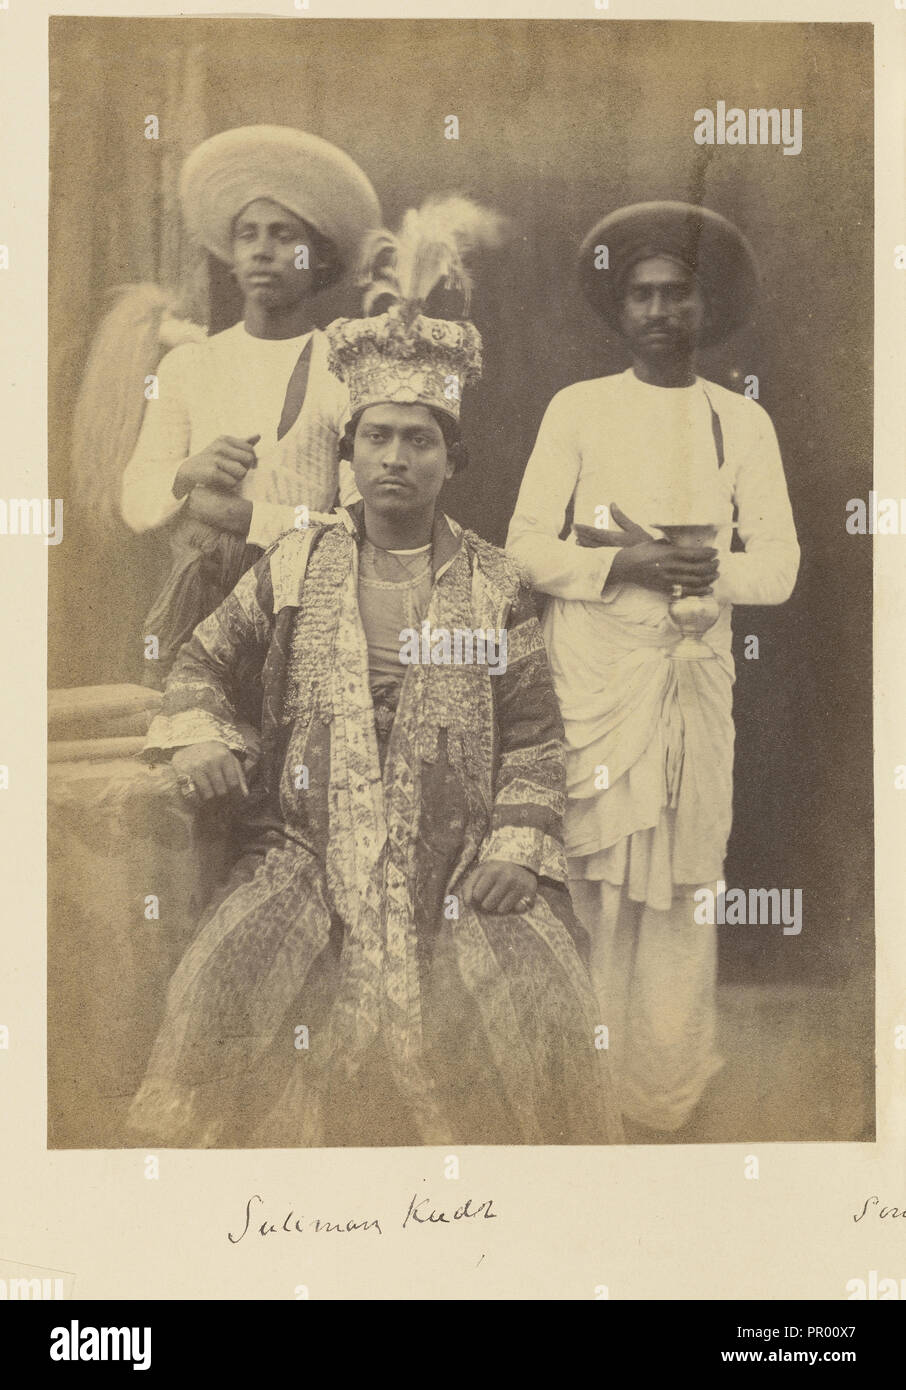 Suliman Kudr, Sohn des Umjud Verbündeten Schah, und zwei Knechte; zu Felice Beato, 1832 - 1909, Indien zugeschrieben Stockfoto